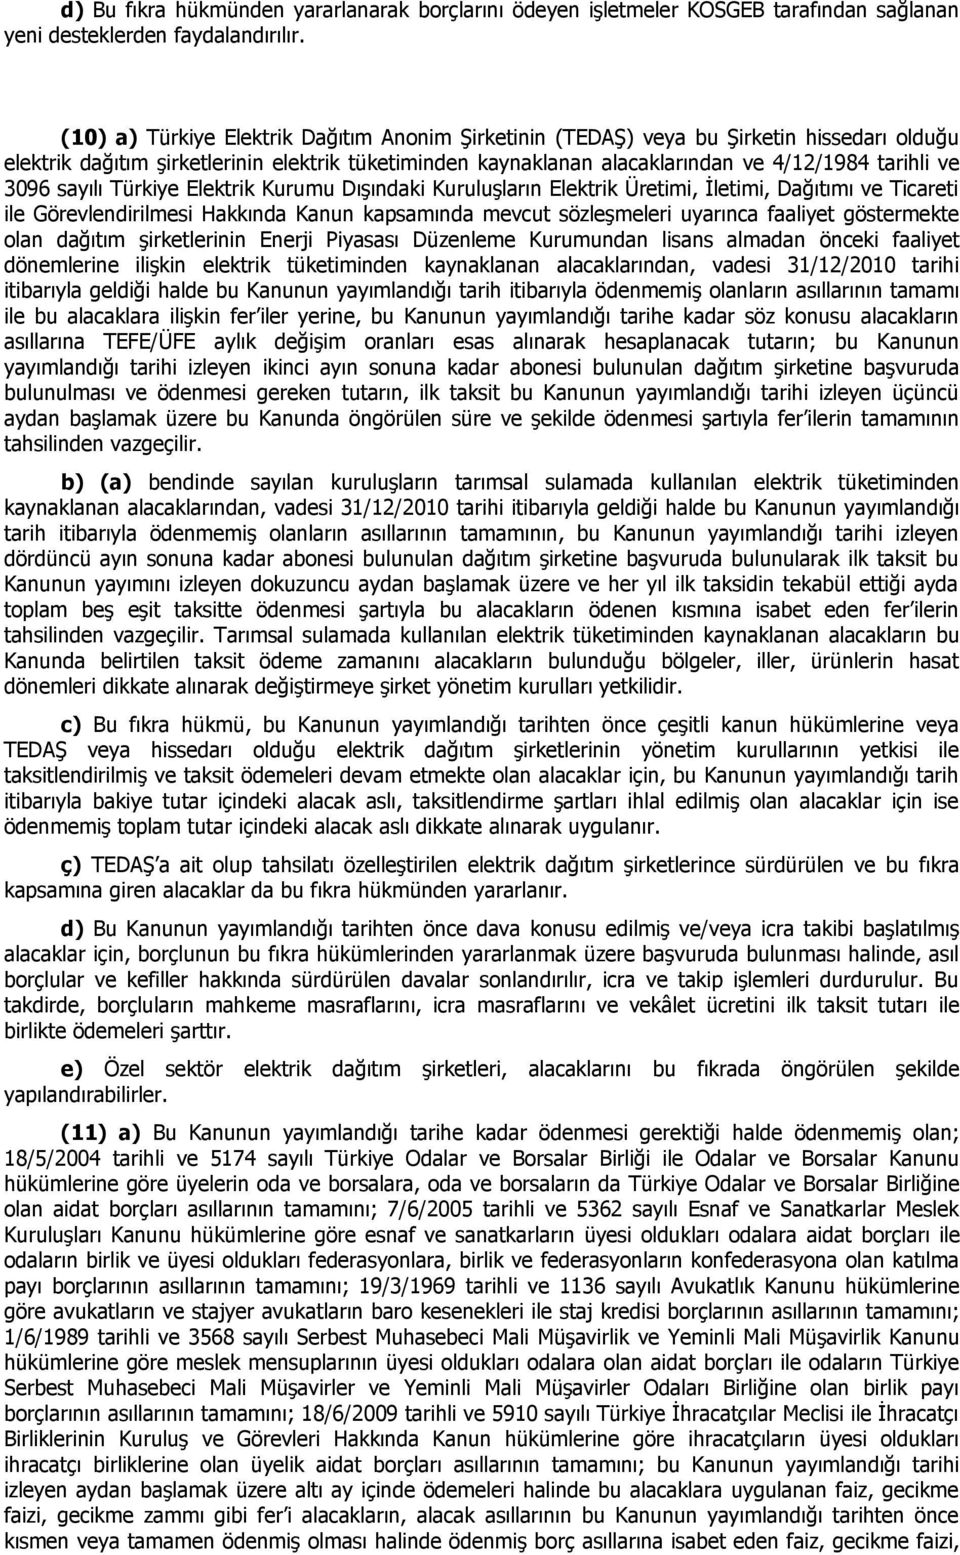 3096 sayılı Türkiye Elektrik Kurumu Dışındaki Kuruluşların Elektrik Üretimi, İletimi, Dağıtımı ve Ticareti ile Görevlendirilmesi Hakkında Kanun kapsamında mevcut sözleşmeleri uyarınca faaliyet